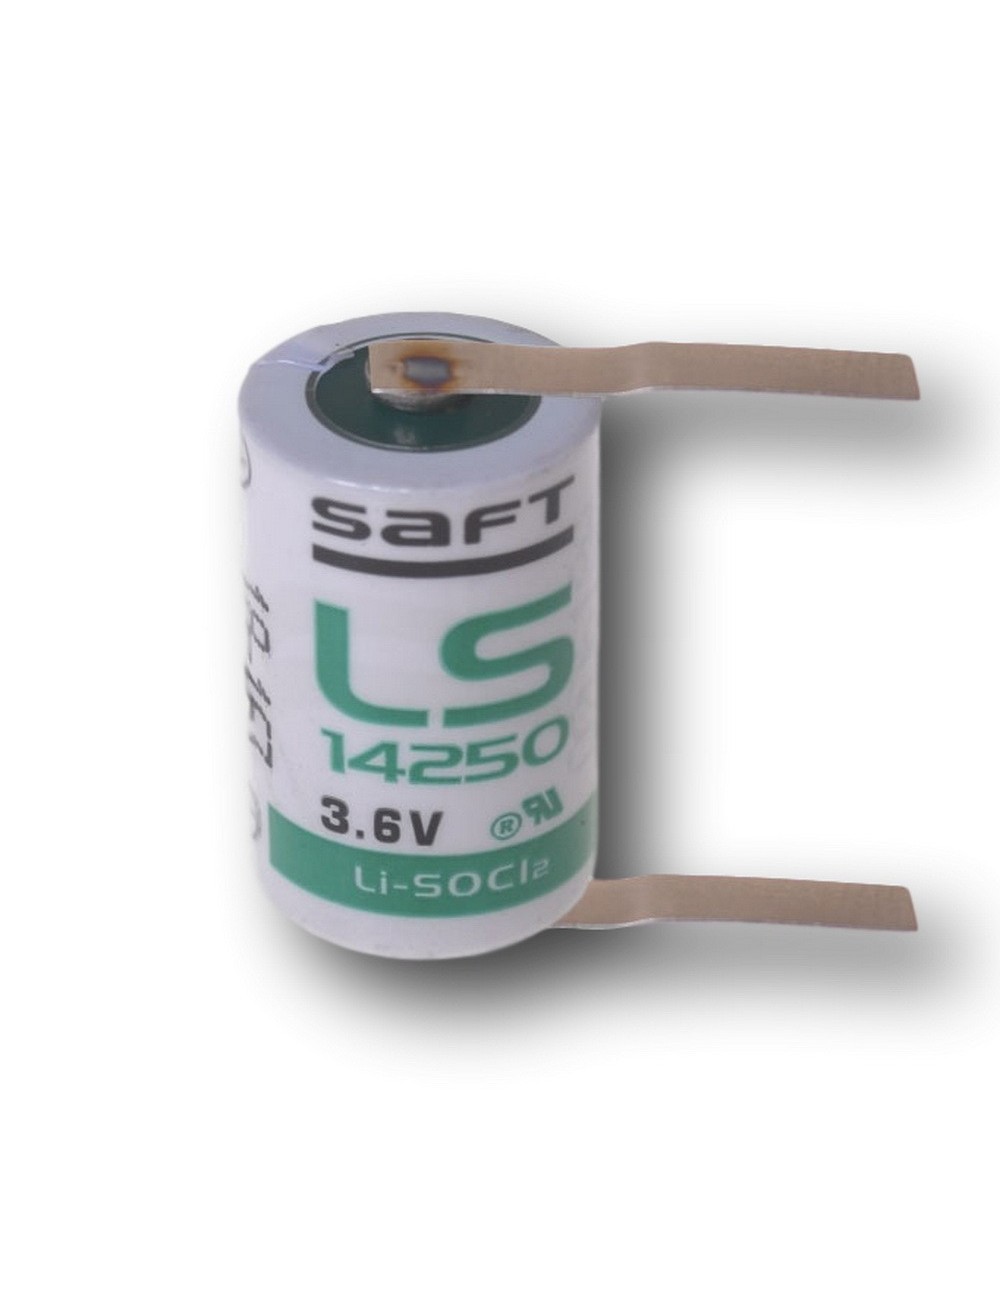 Lithium batterij 3,6V 1,2Ah LS 14250 CNR (04227A)